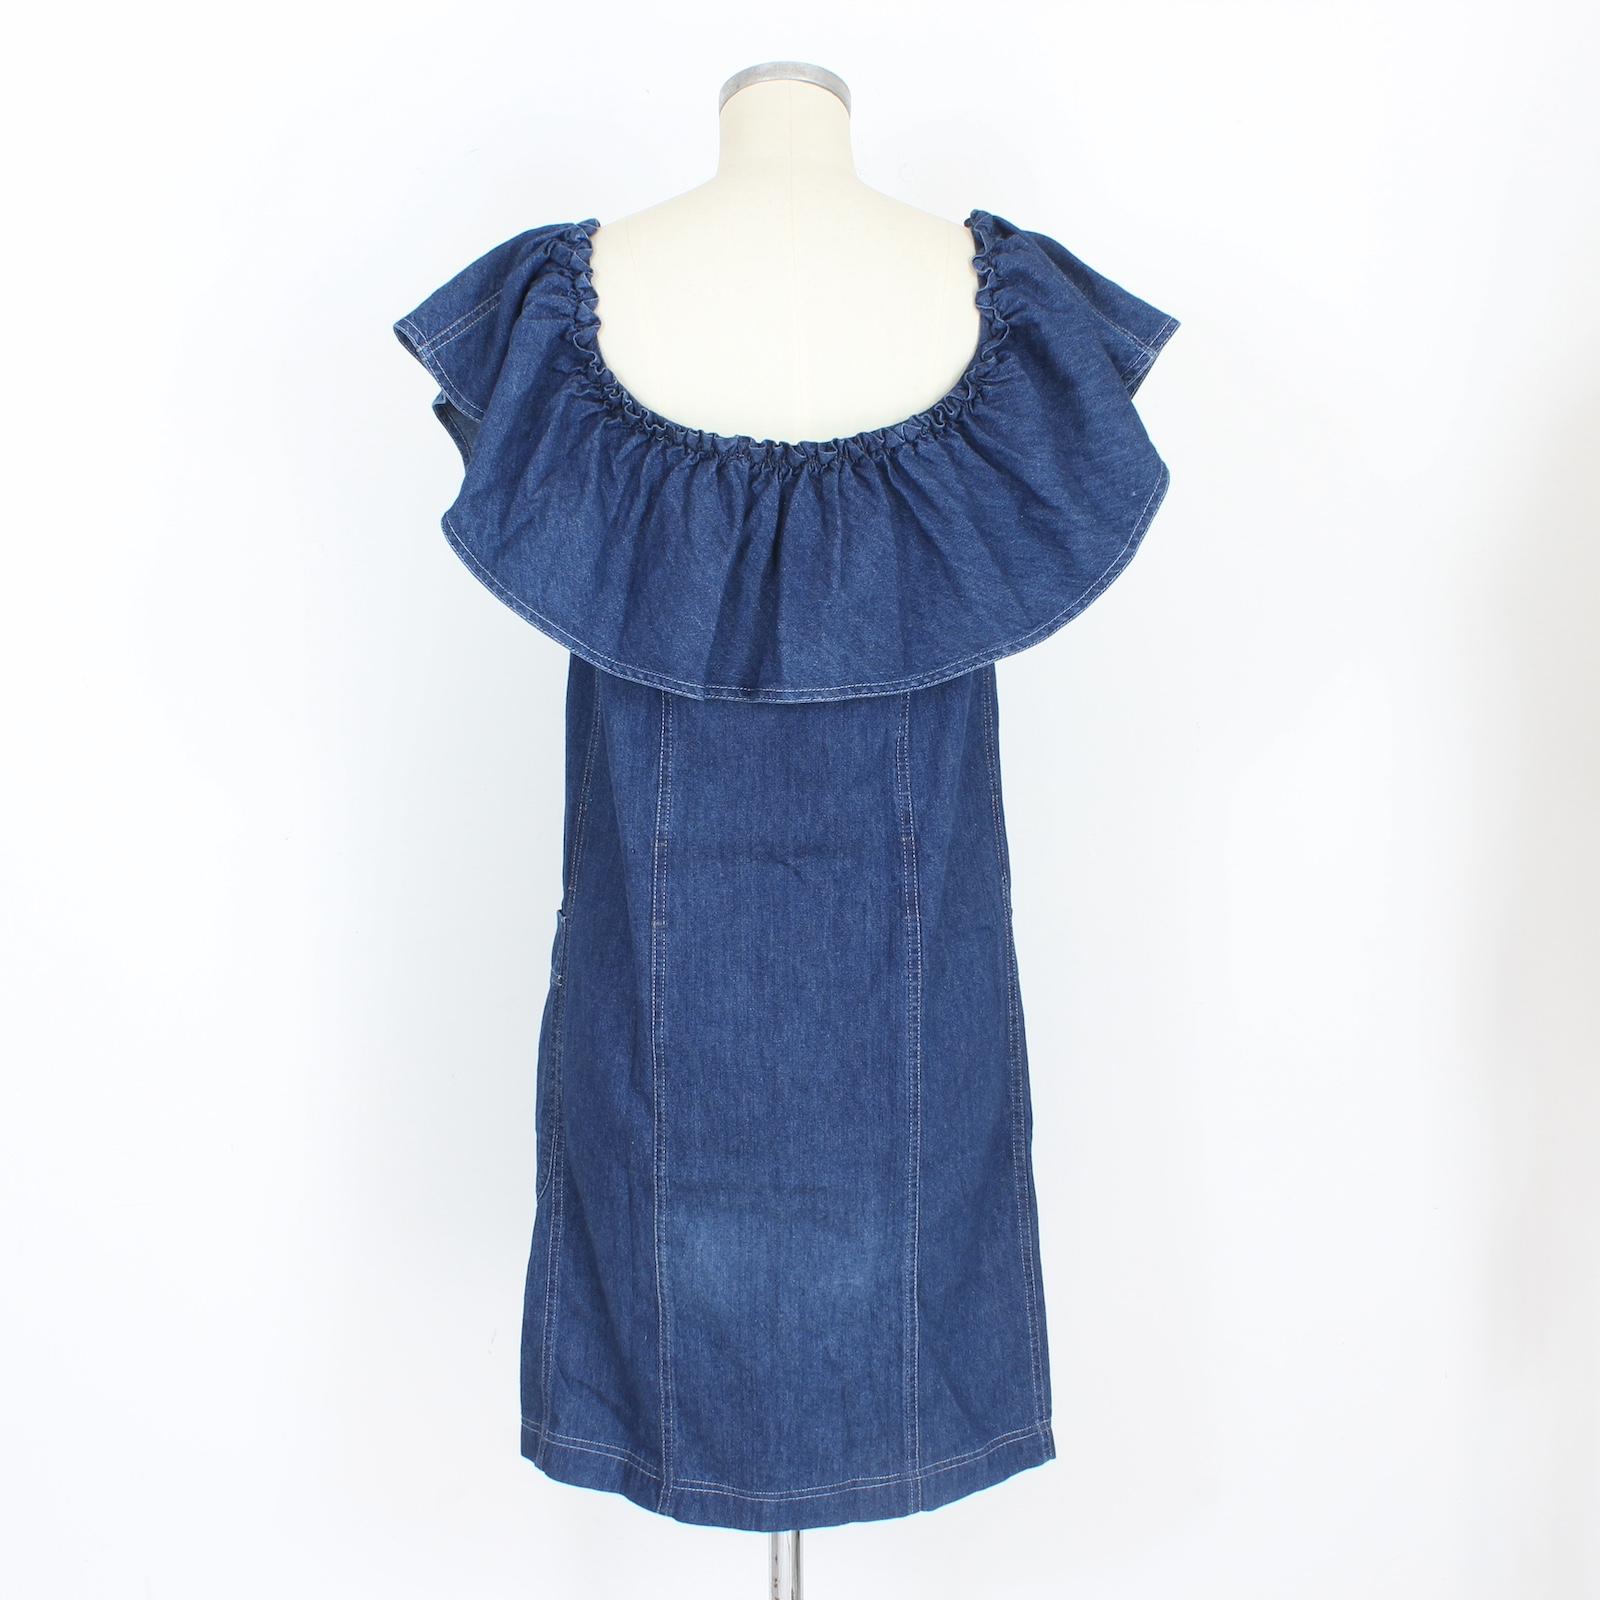 Moschino Vintage 80er Jahre blaues Denim Rouches Kleid. Hemdblusenkleid, Knopfverschluss auf der Vorderseite. Geraffter Ausschnitt, der bis zu den Schultern fällt, Taschen an den Seiten. Stoff aus 100% Baumwolle. Hergestellt in Italien.

Größe: 42